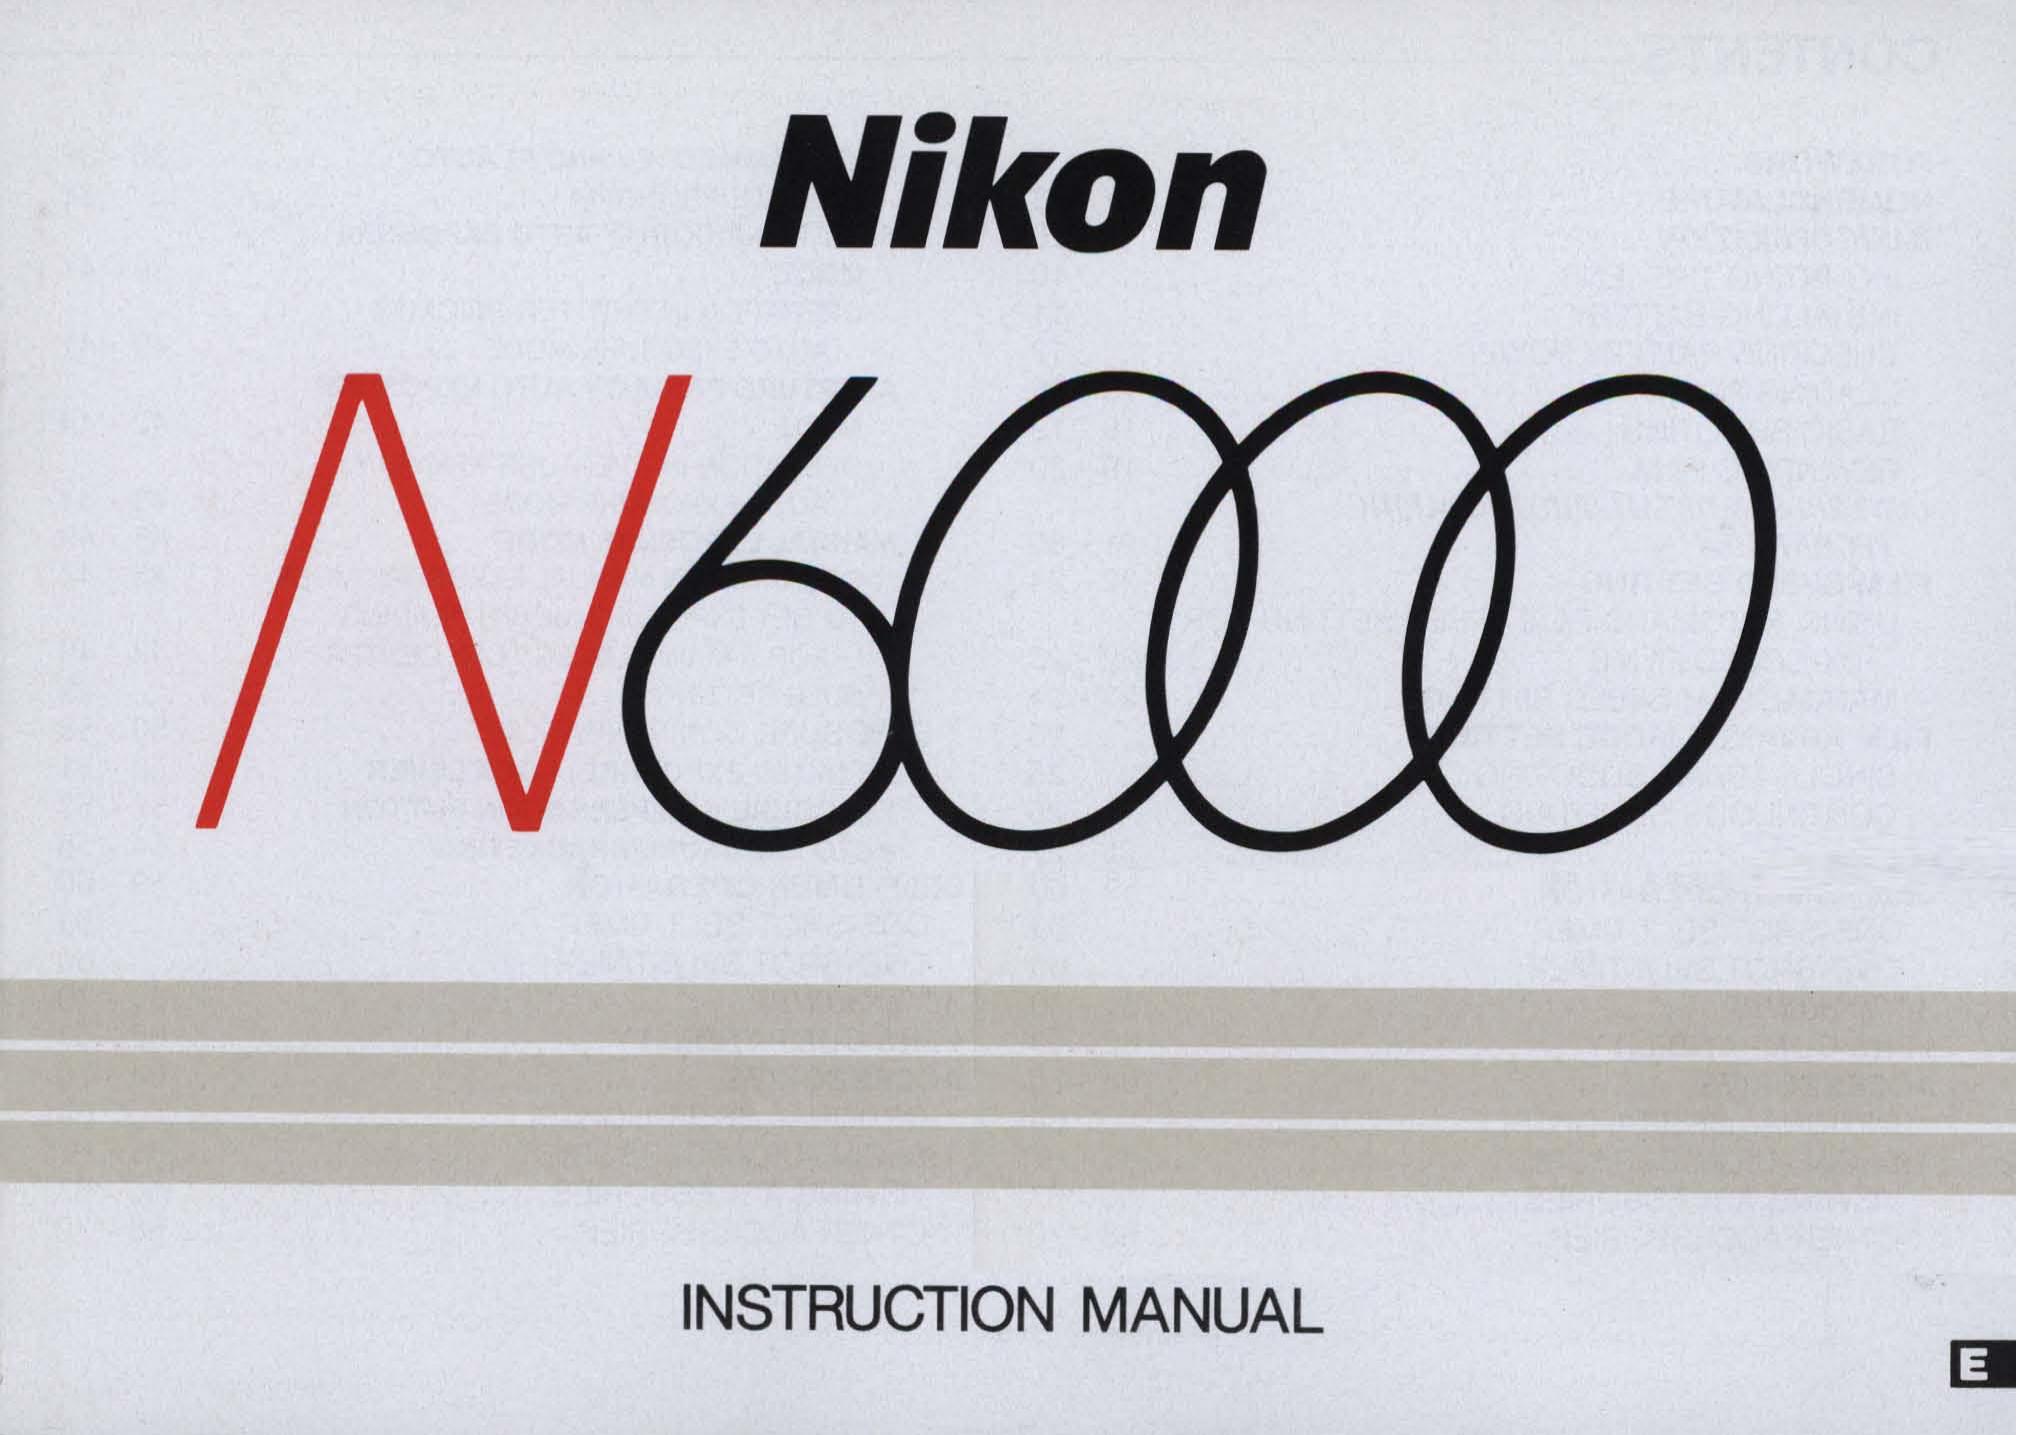 Nikon N6000 Film Camera User Manual